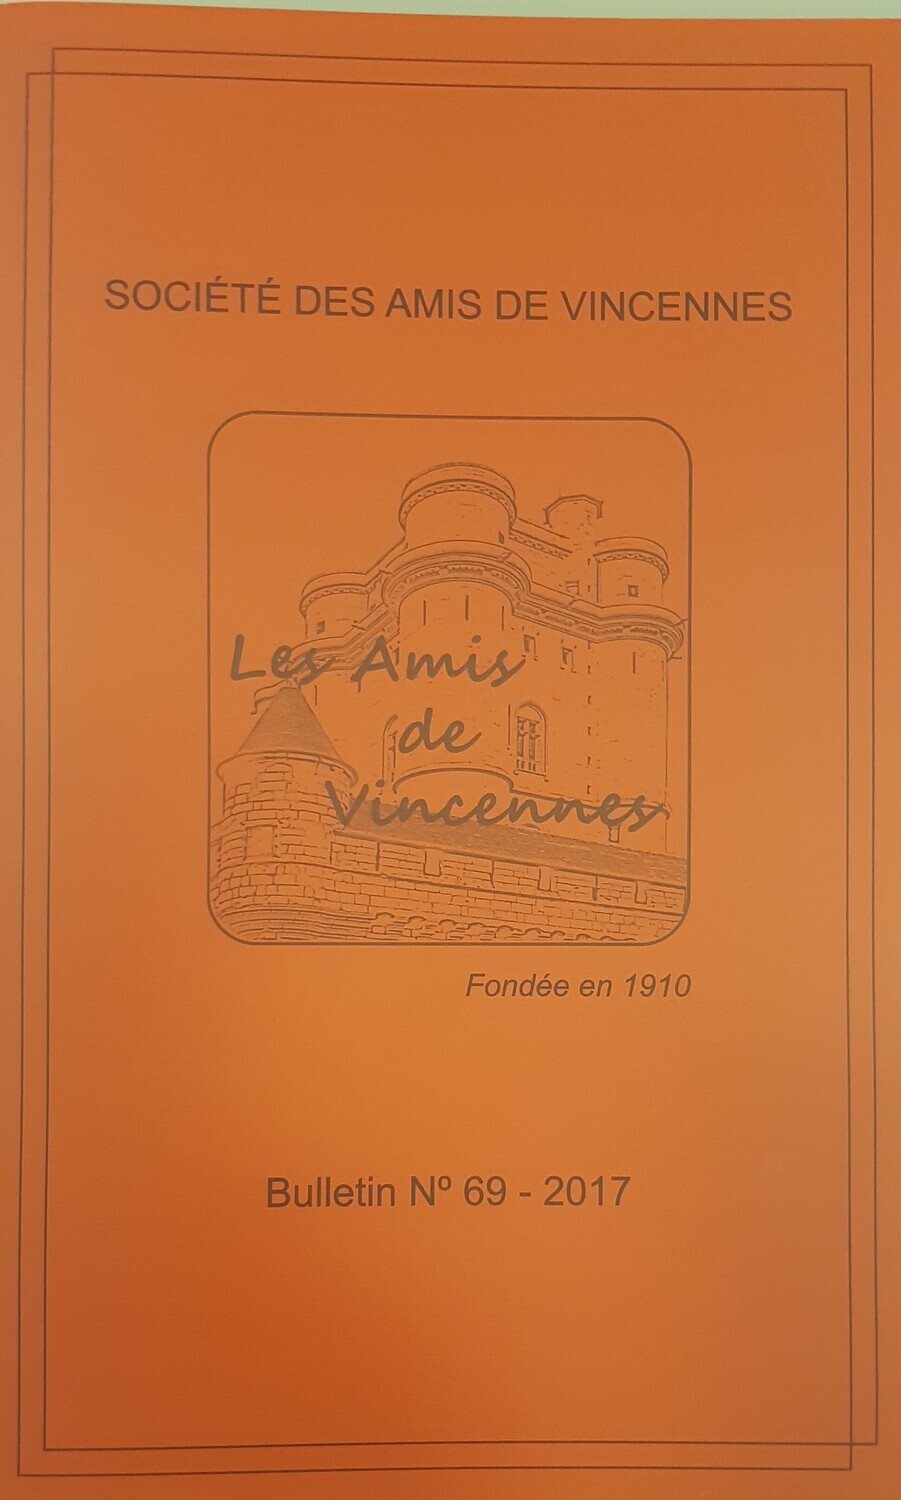 Bulletin de la Société des Amis de Vincennes N°69 - 2017